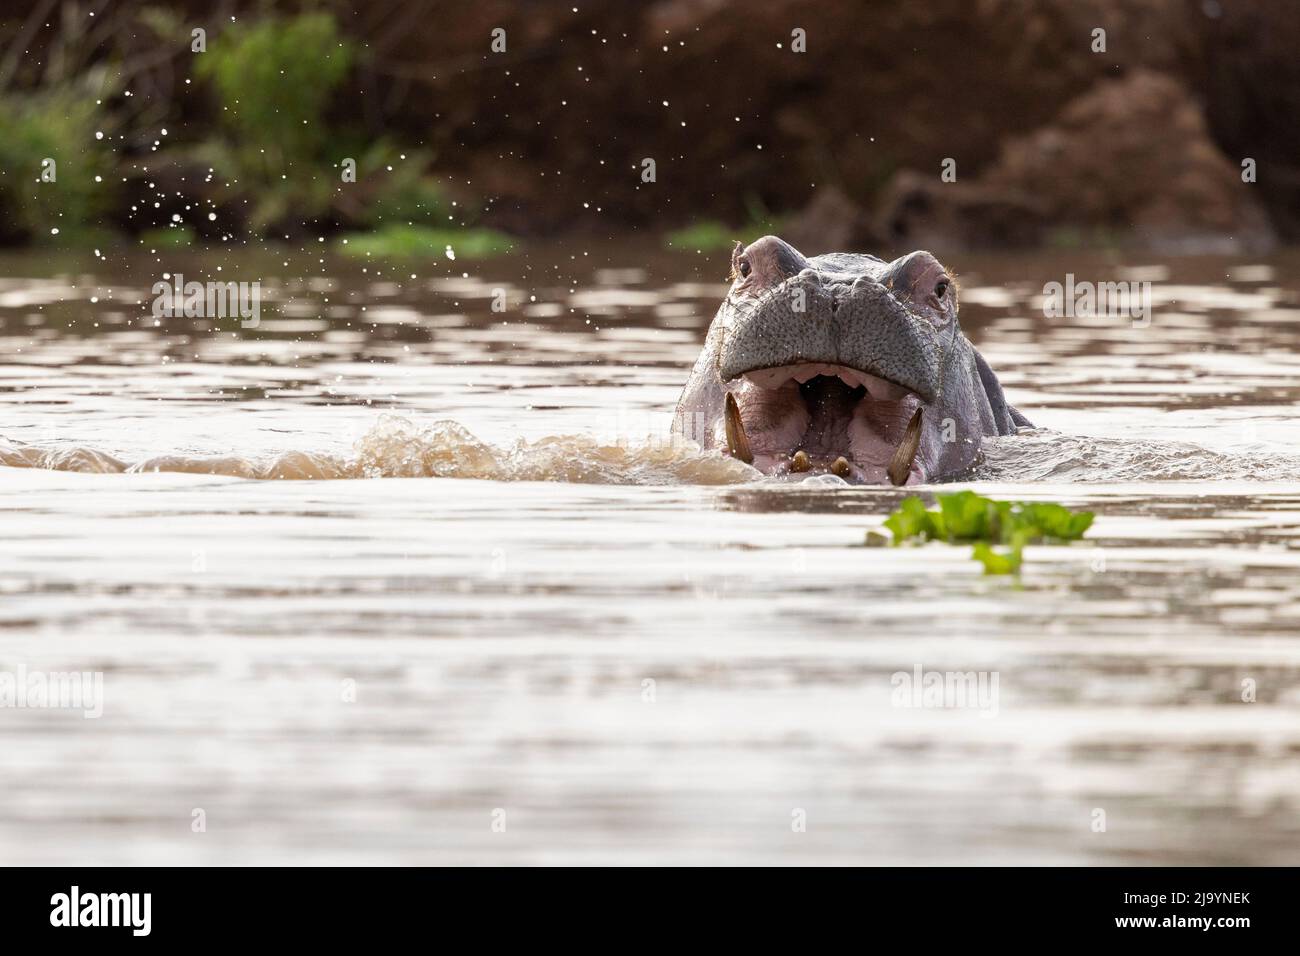 Un gruppo di ippopotamo (Ippopotamo anfibio) che si rilassa in acqua Foto Stock